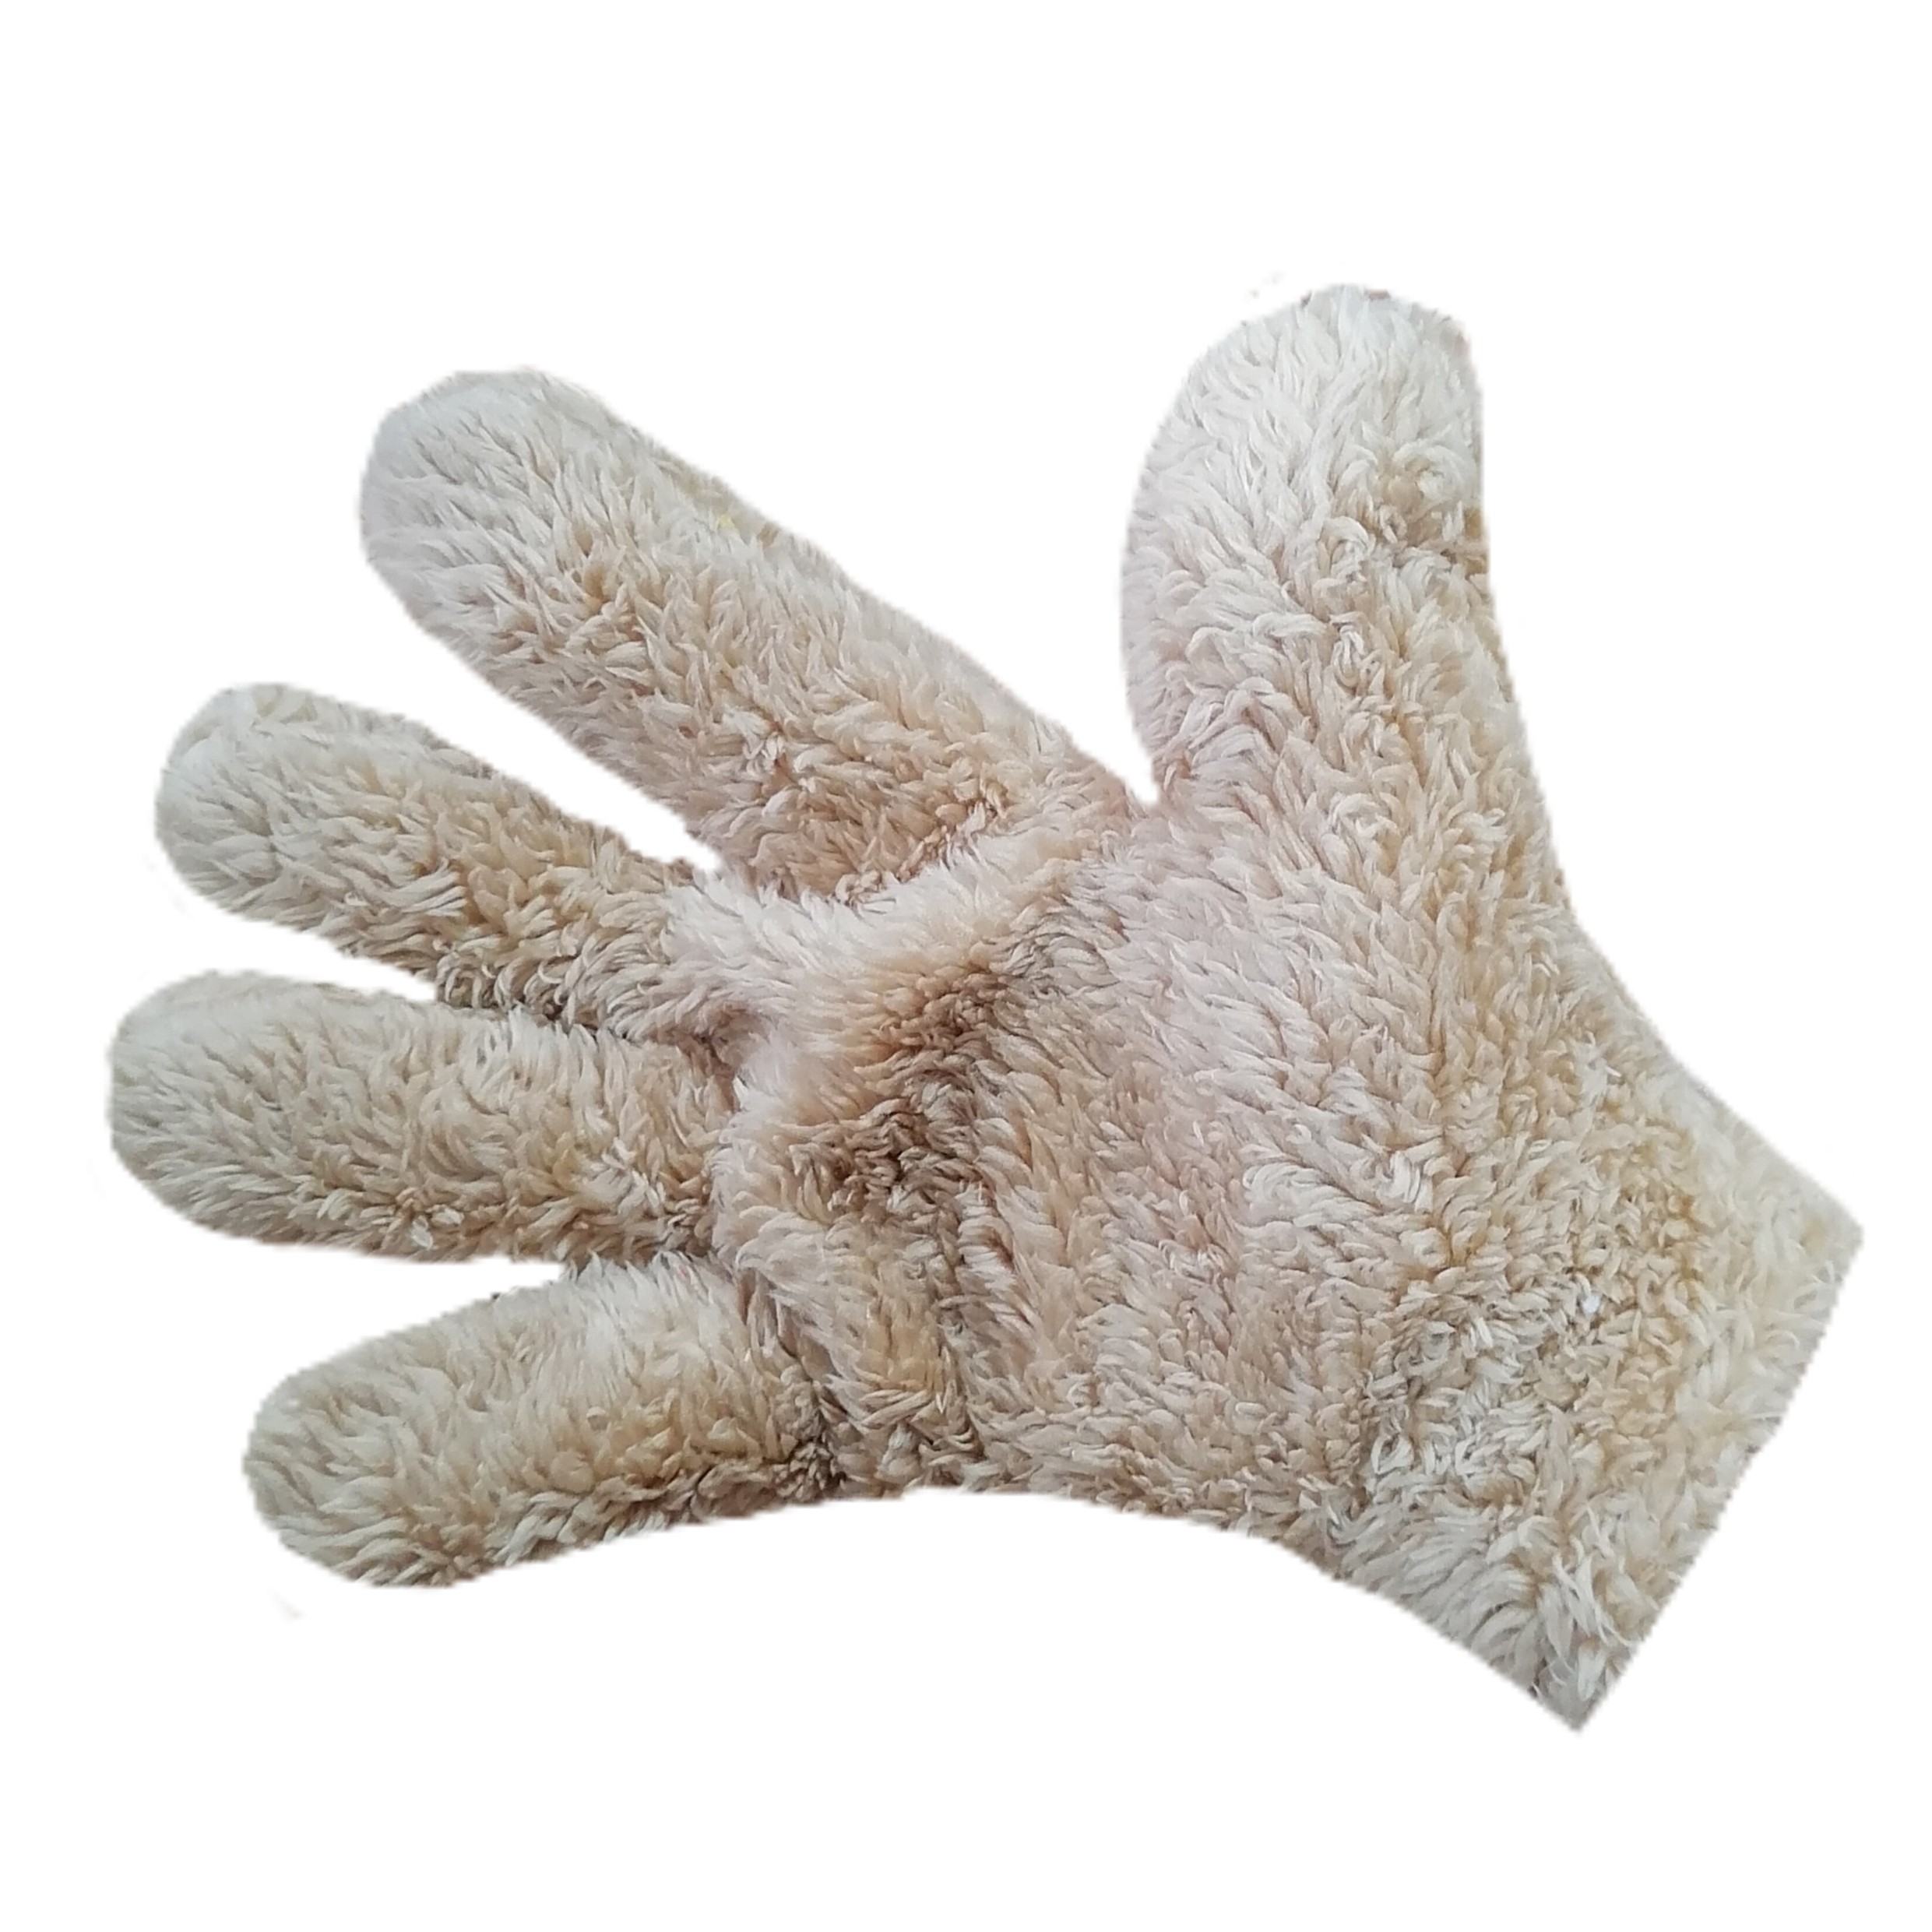 دستکش نظافت دست کاج مدل rash 3725714